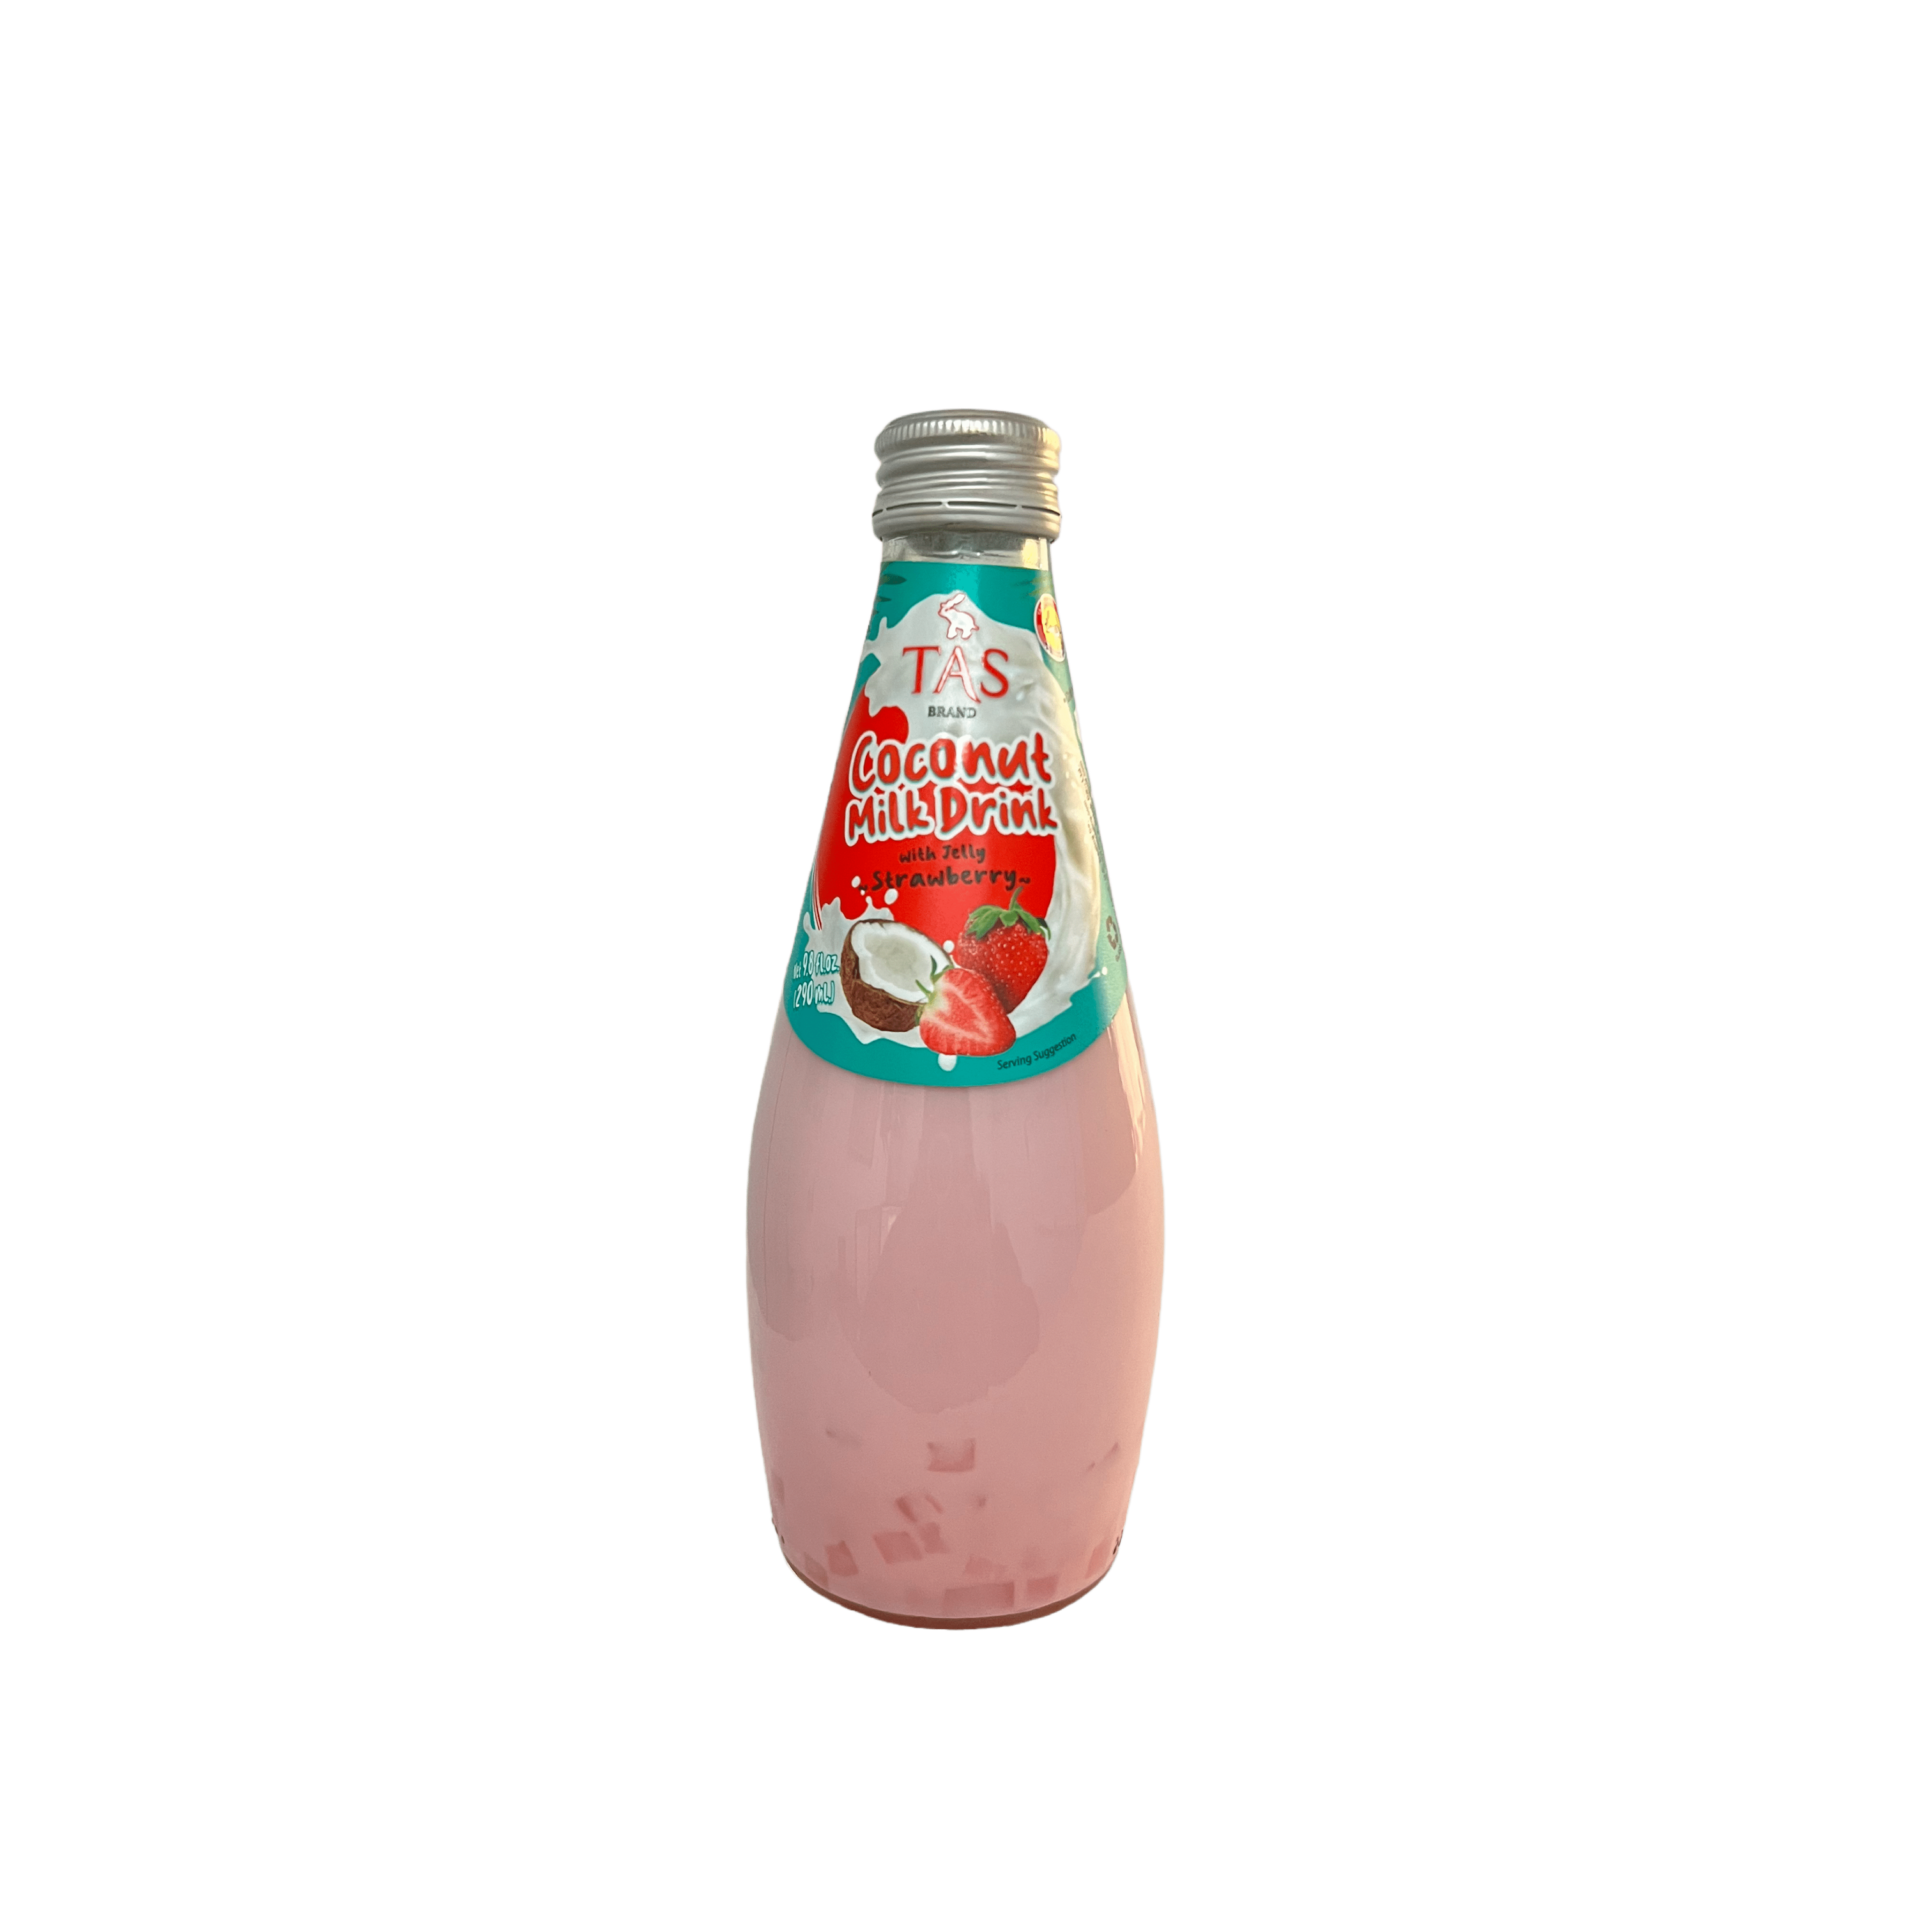 Tas Coconut Milk Drink With Strawberry Jelly 9.8oz